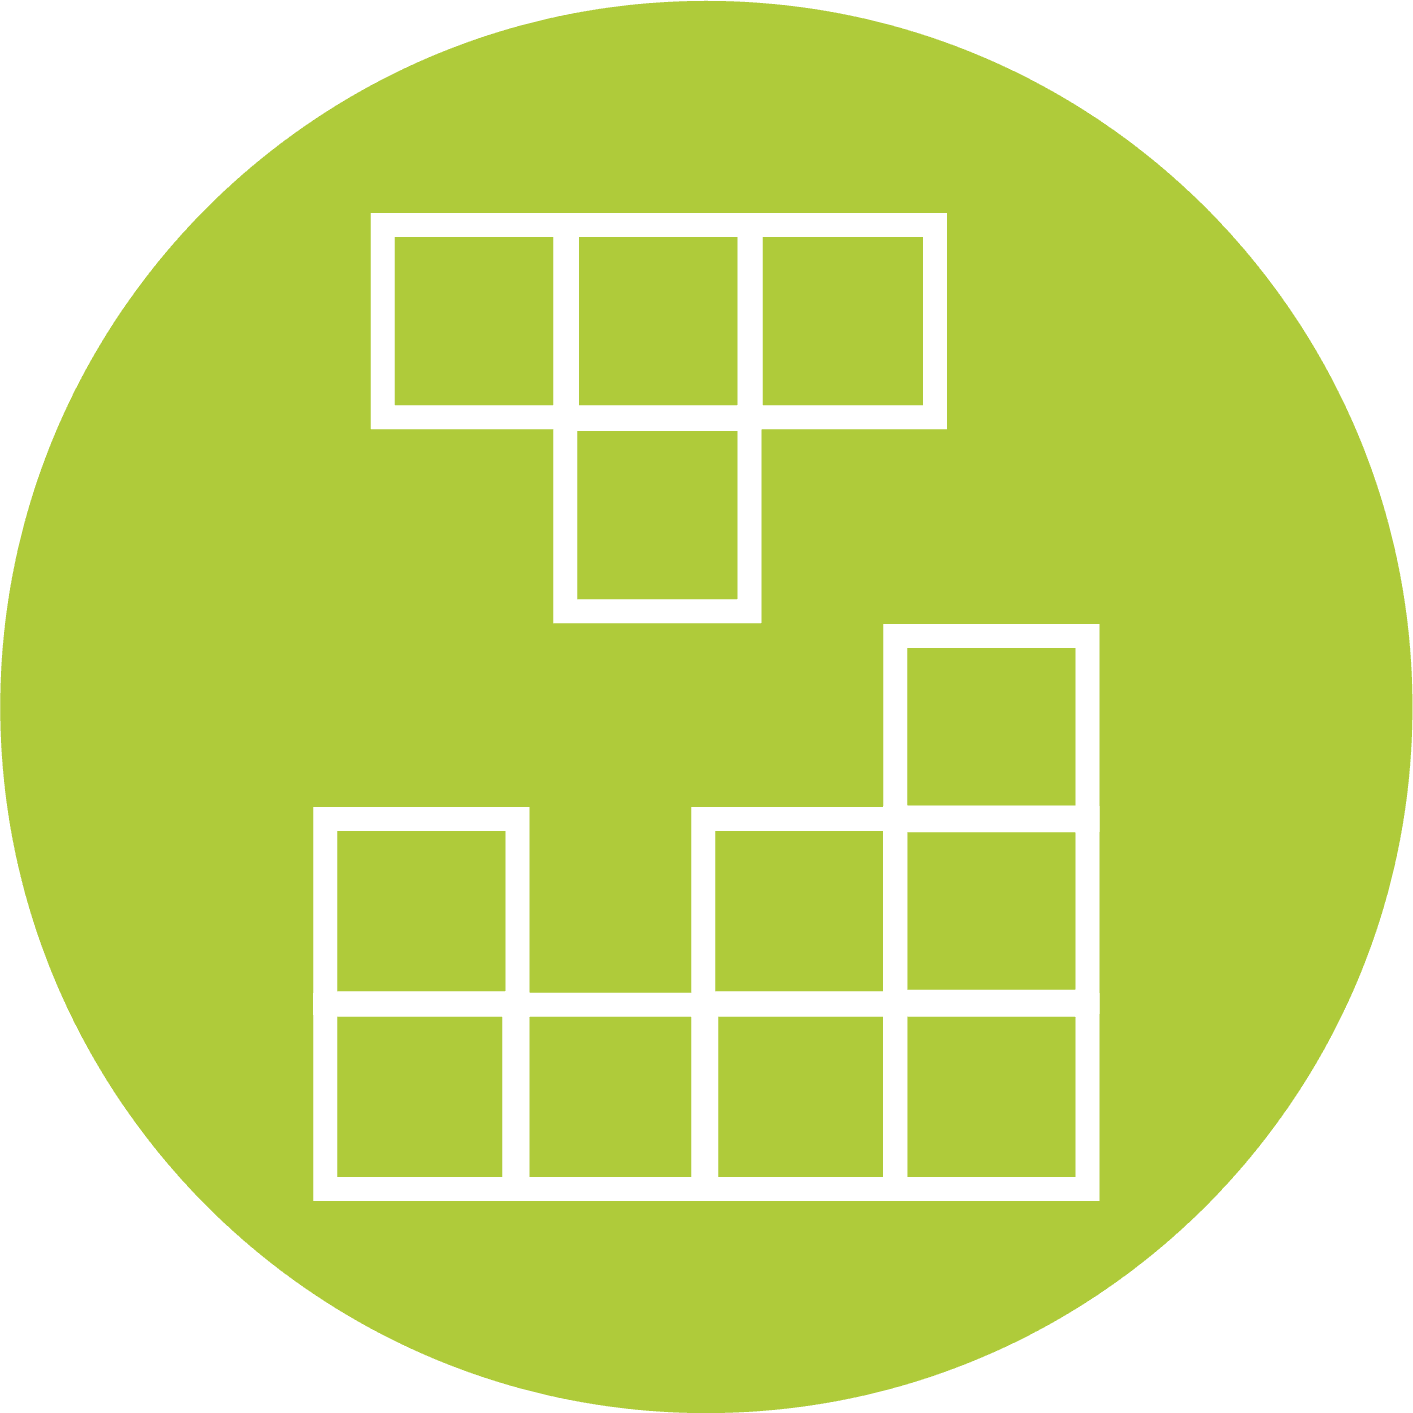 Modulares Block-Icon mit weißer Umrandung auf einem grünen kreisförmigen Hintergrund, das Lösungen und Frameworks repräsentiert